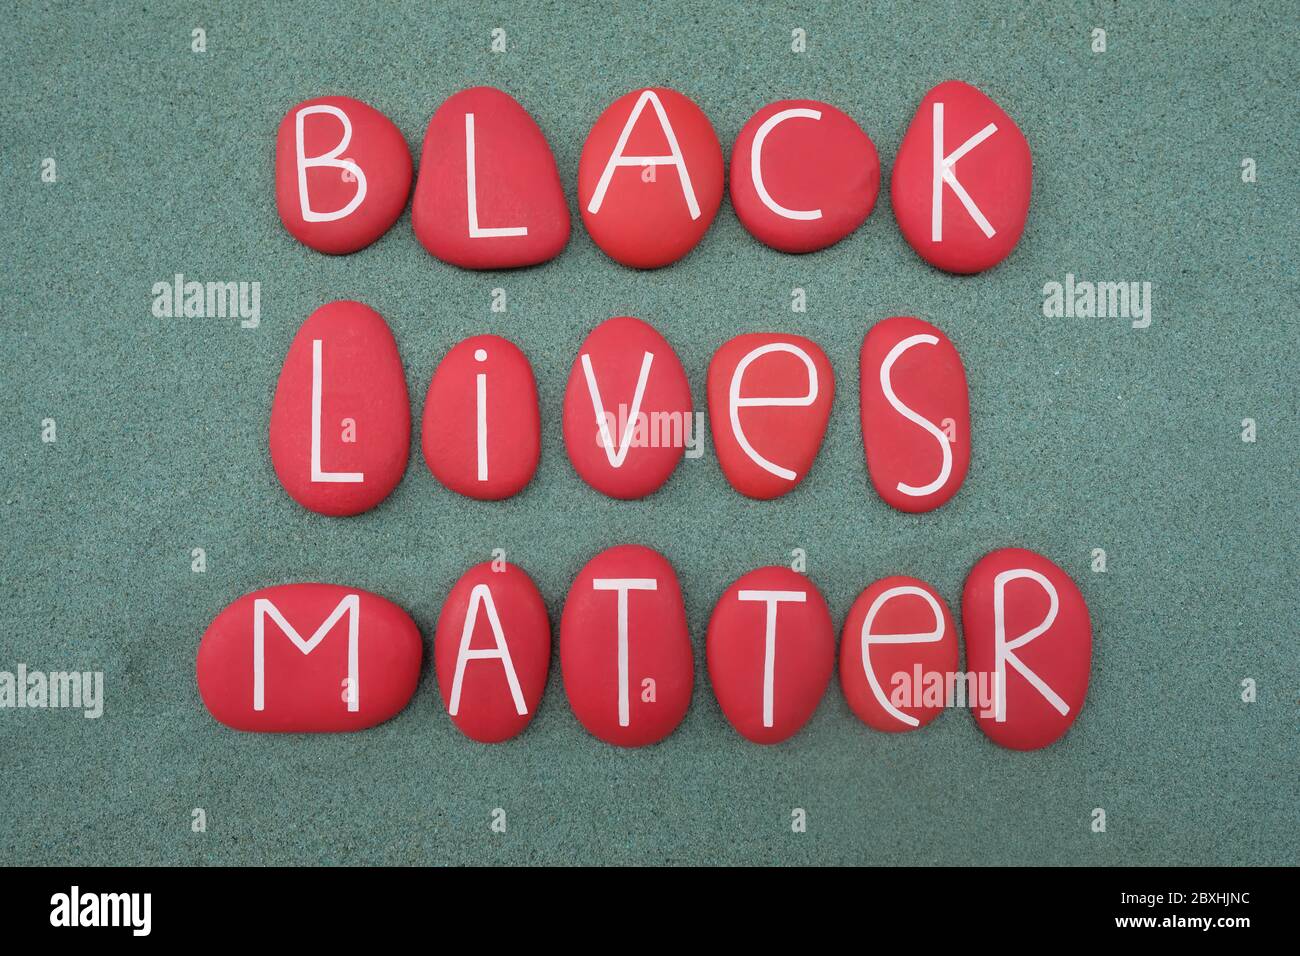 Les vies noires comptent, le slogan et la question sociale contre la violence et le racisme systémique envers les Noirs composés de lettres en pierre rouges Banque D'Images